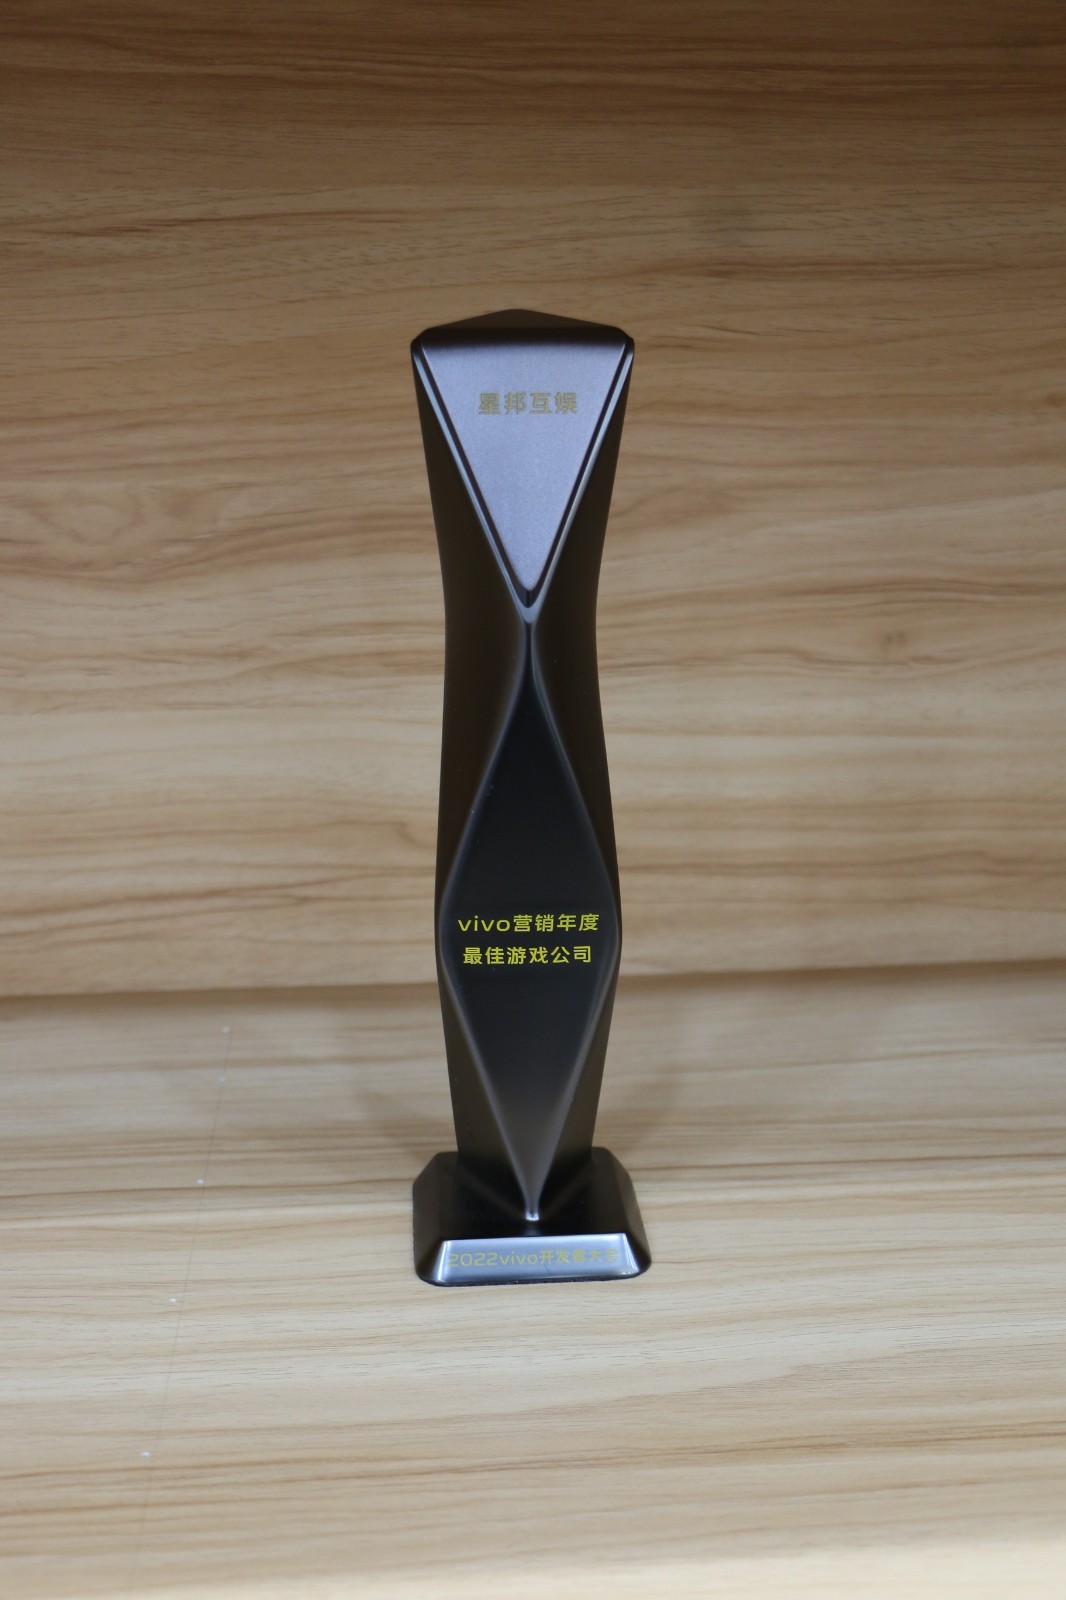 星邦互娱获评vivo营销年度最佳游戏公司-1.jpg